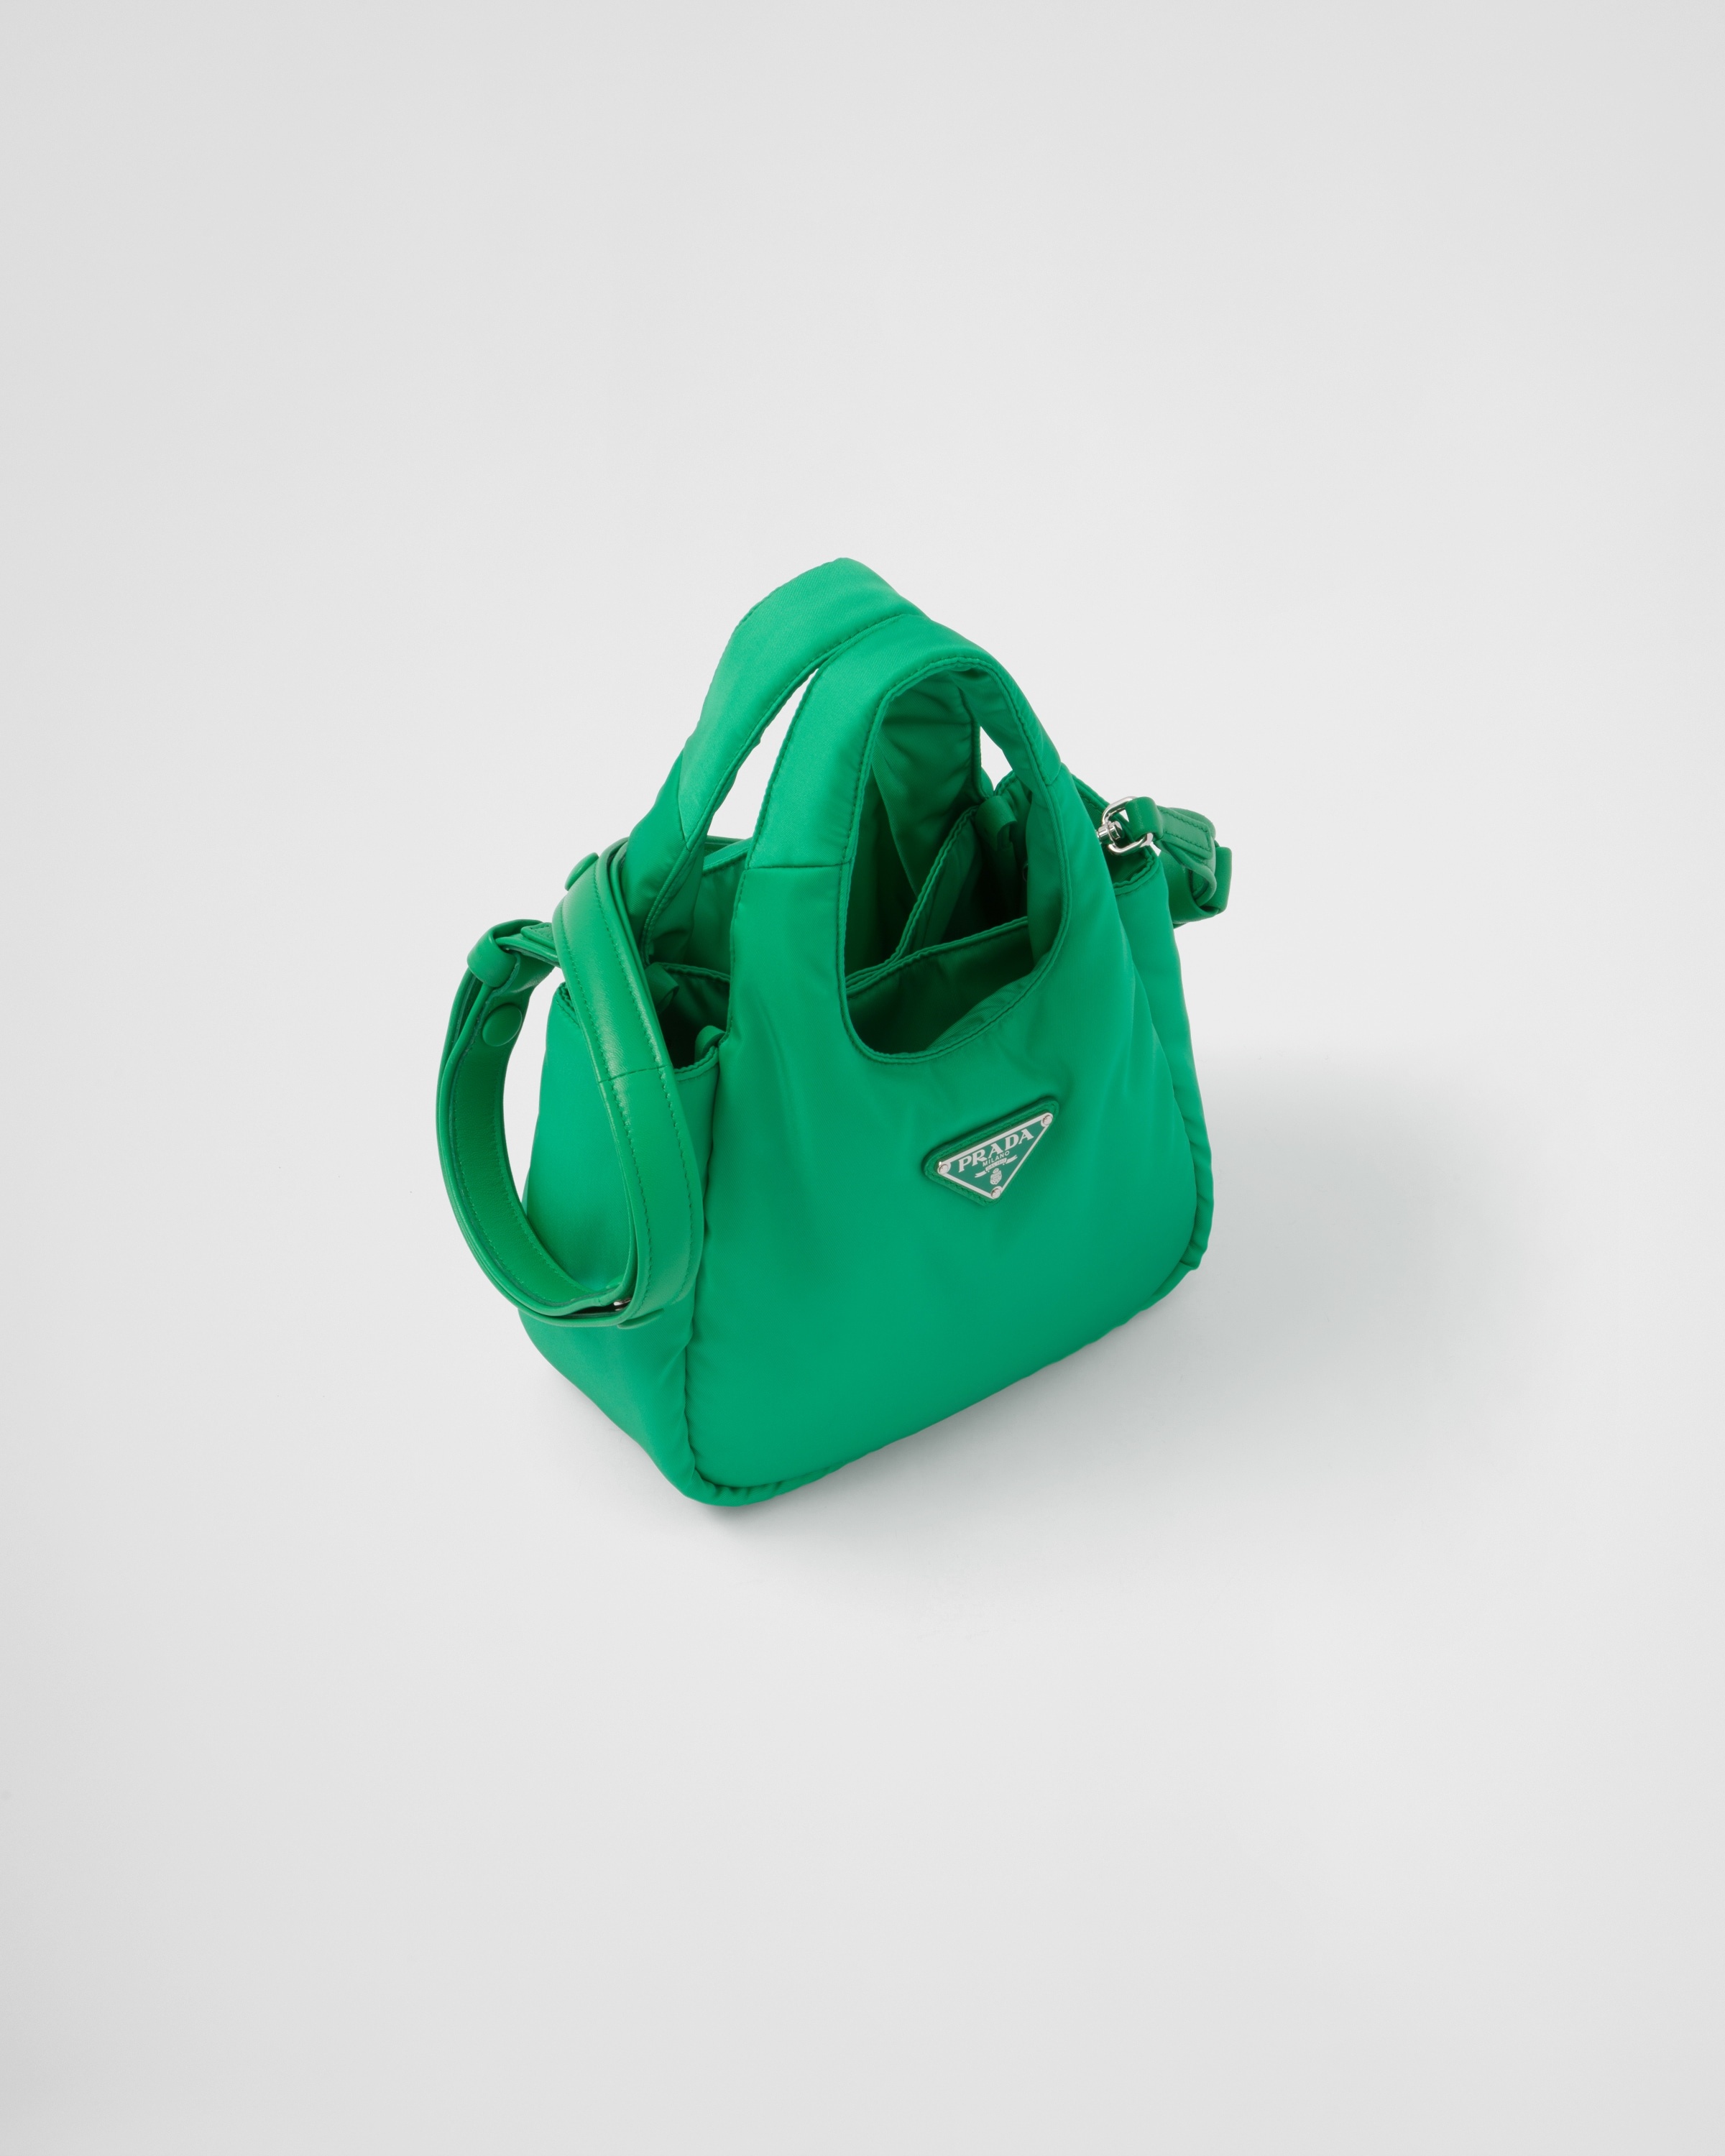 PRADA green handbag